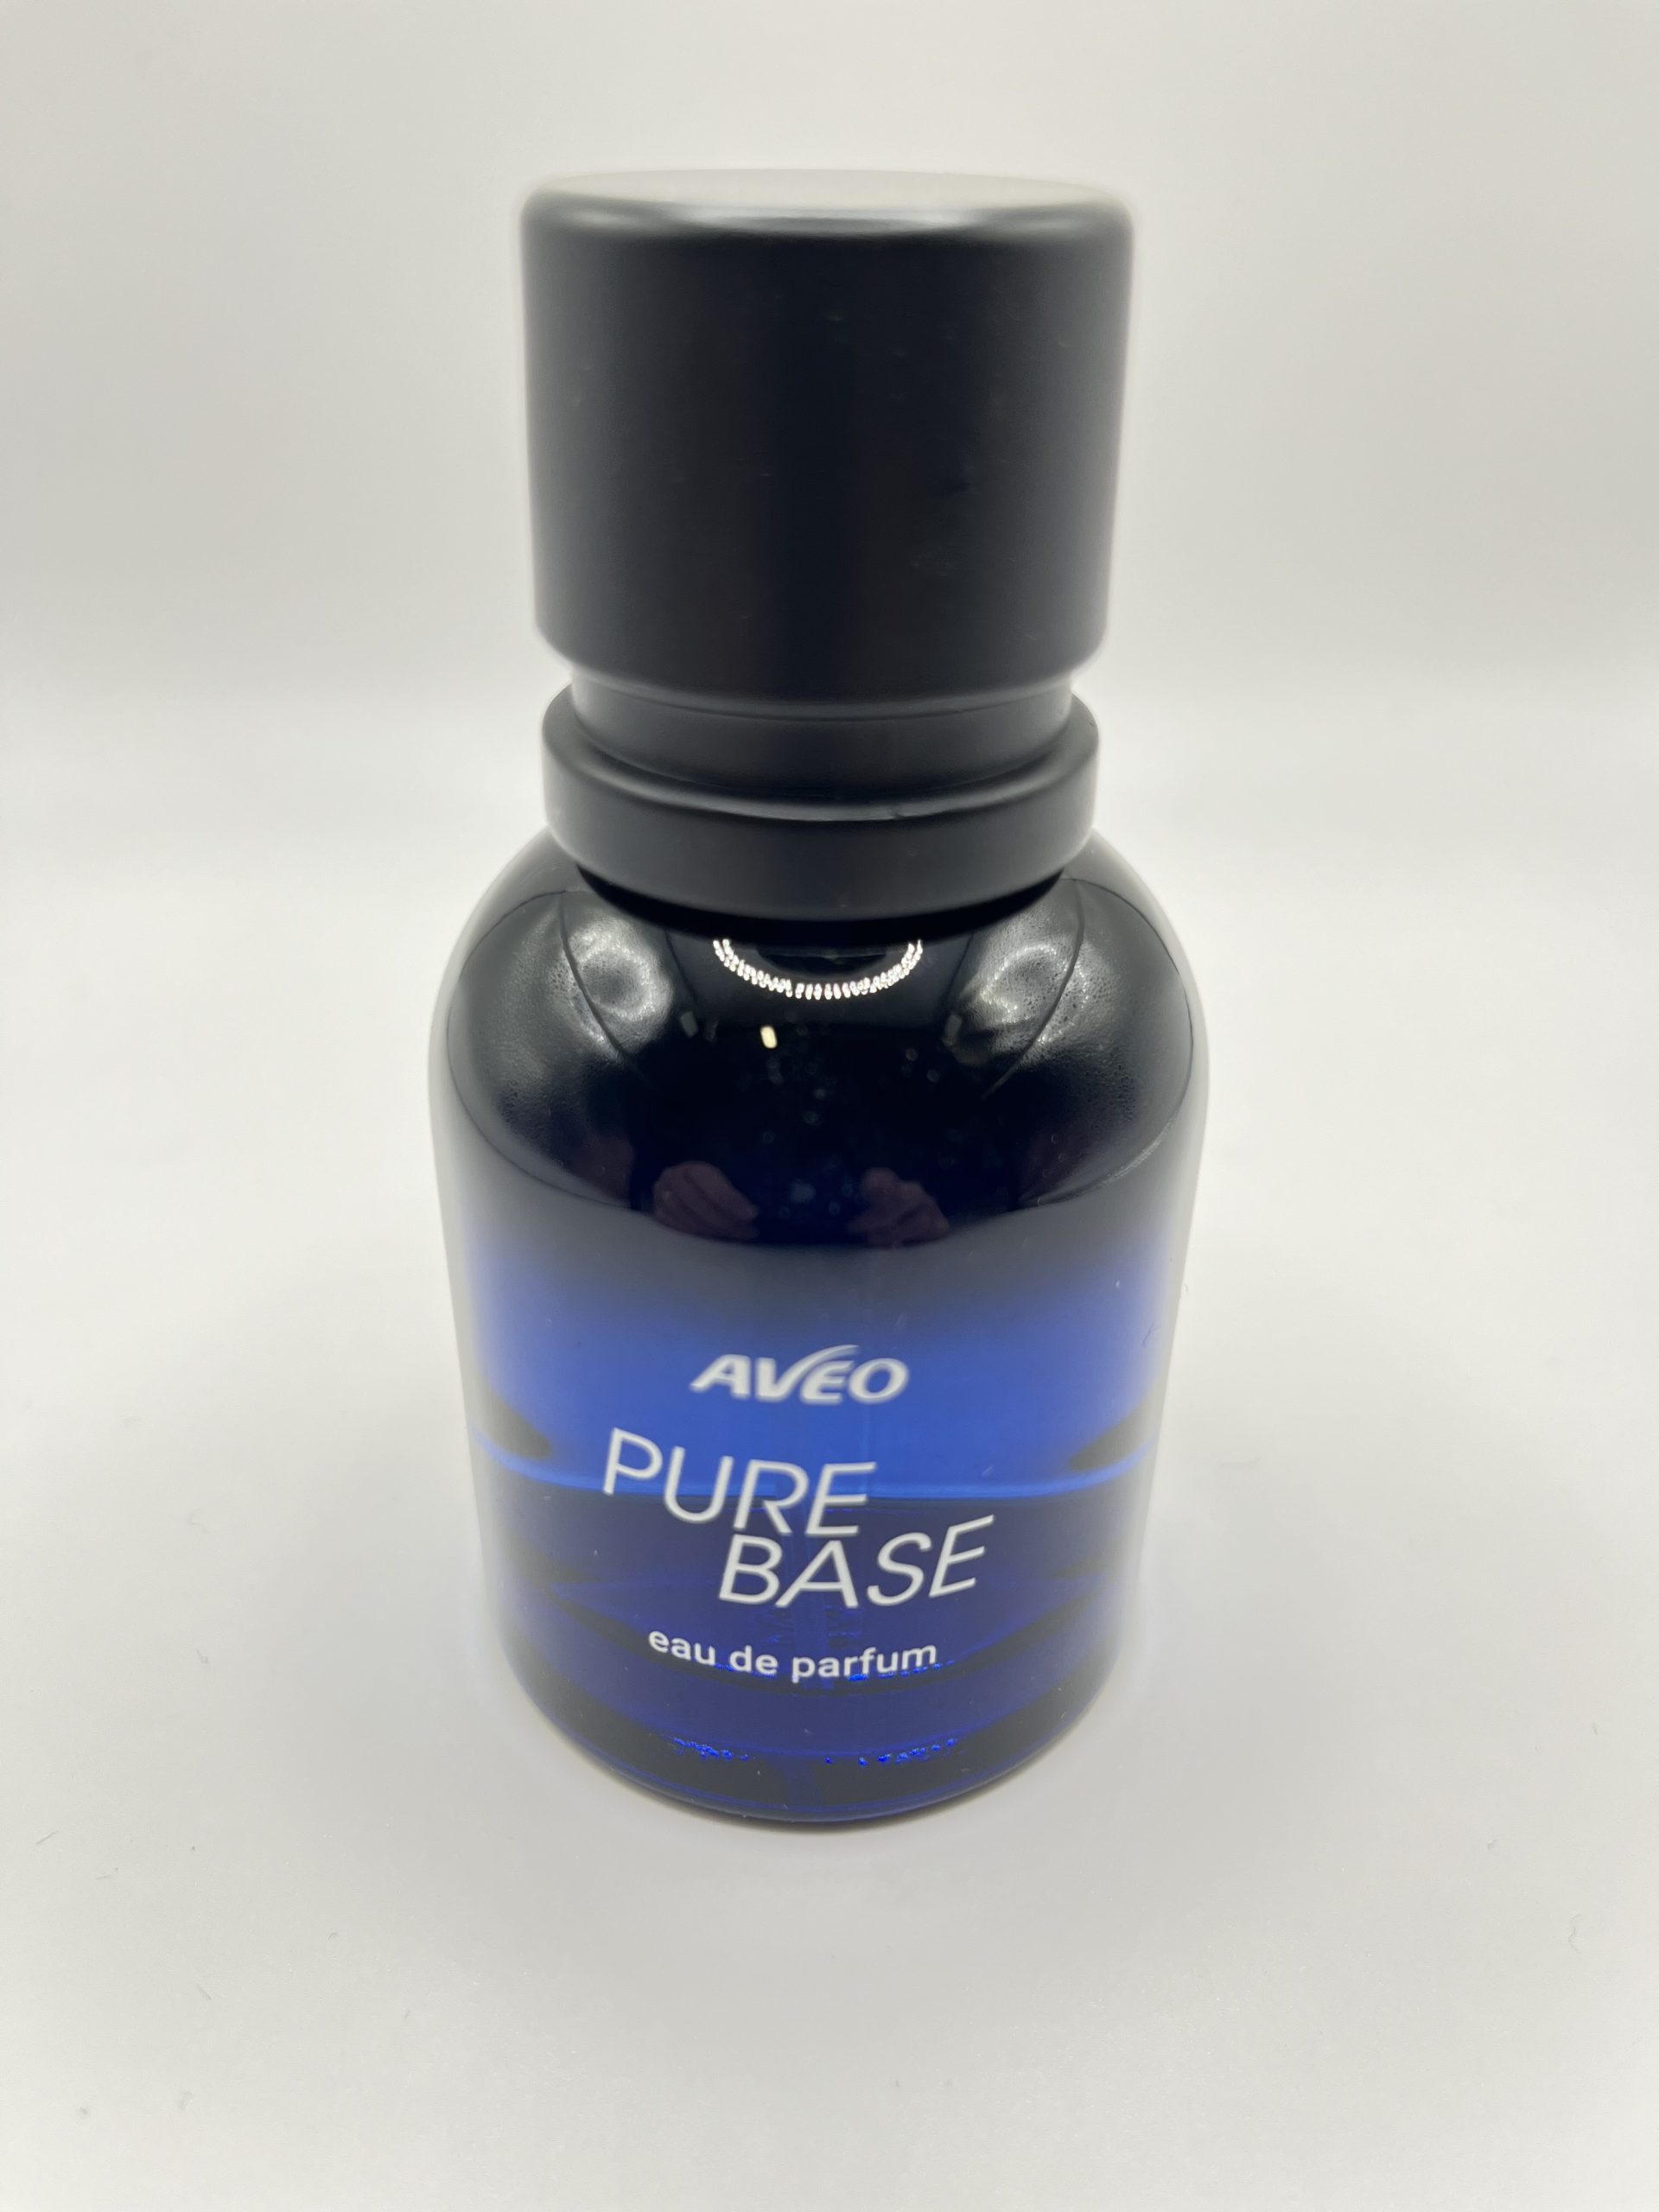 Featured image for “Pure Base Eau de Parfum 50ml”